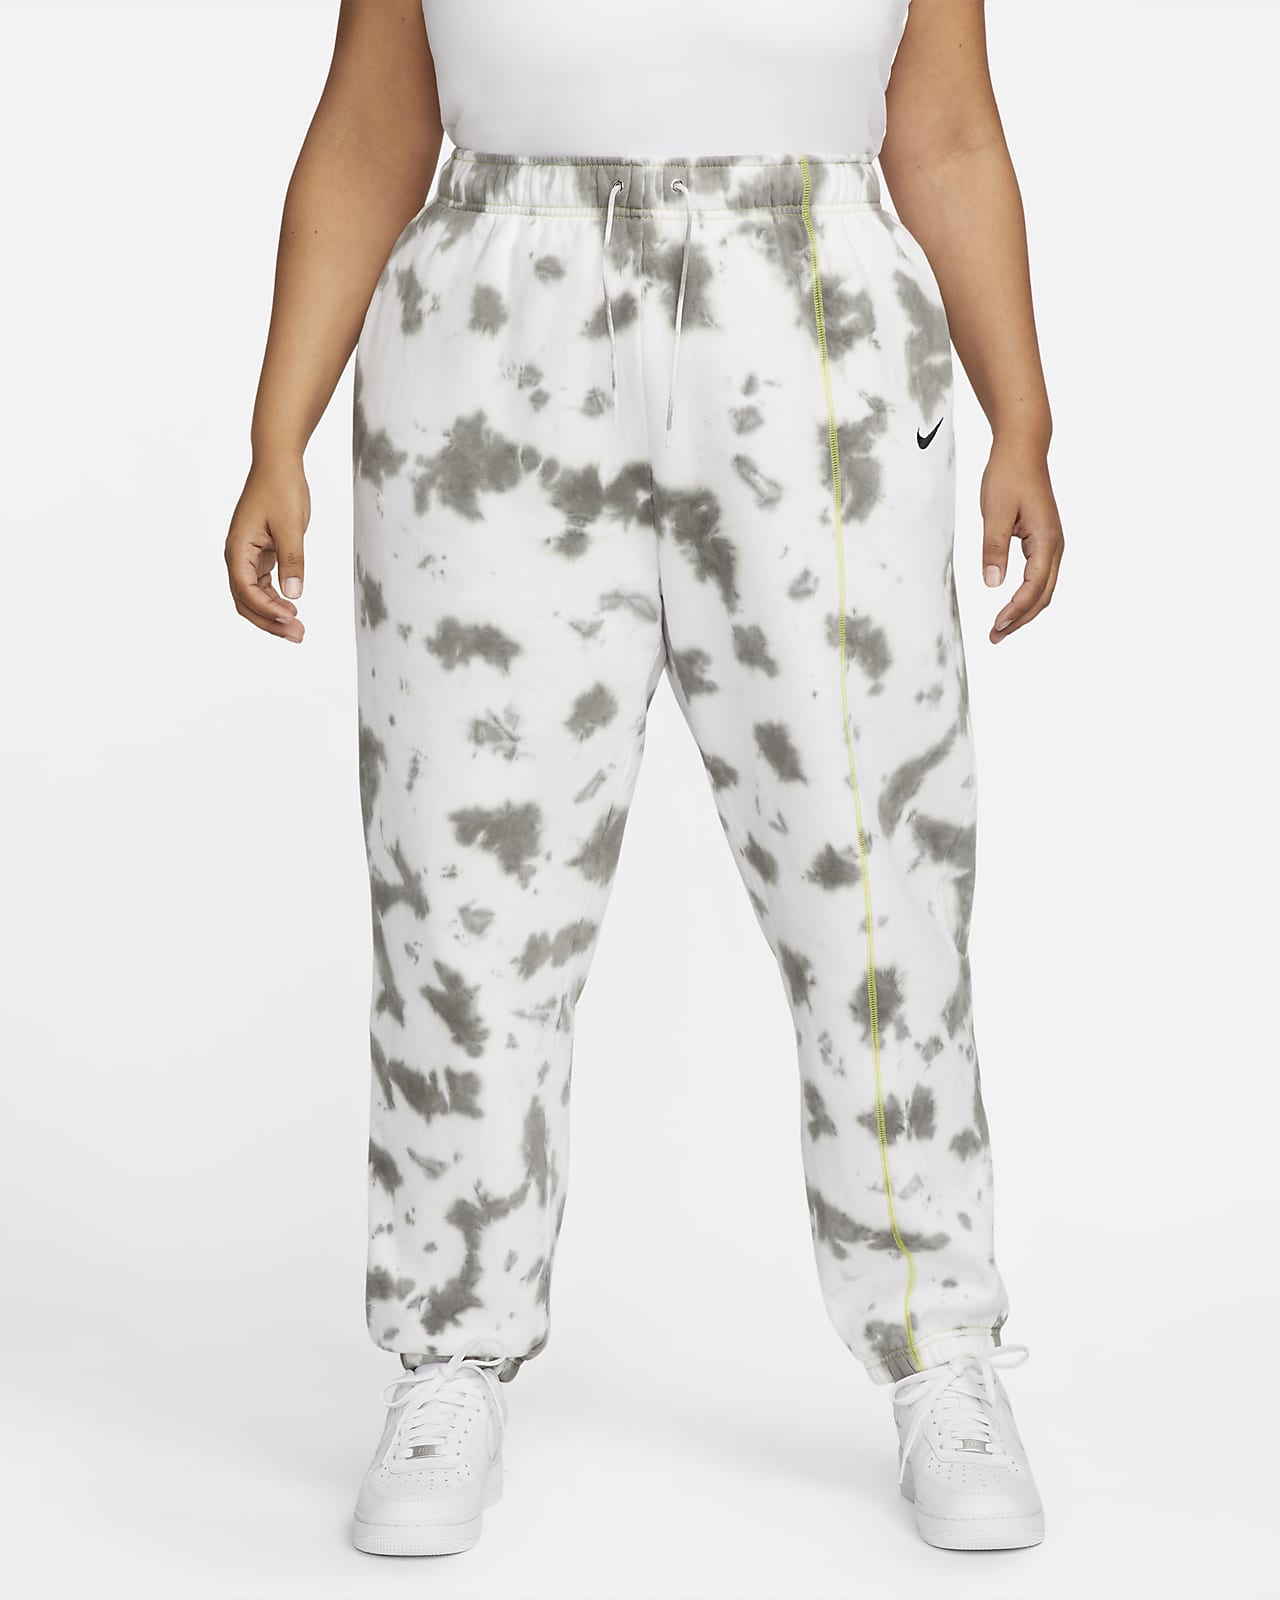 Pantalon tie-dye en tissu Fleece Nike Sportswear pour Femme (grande taille)